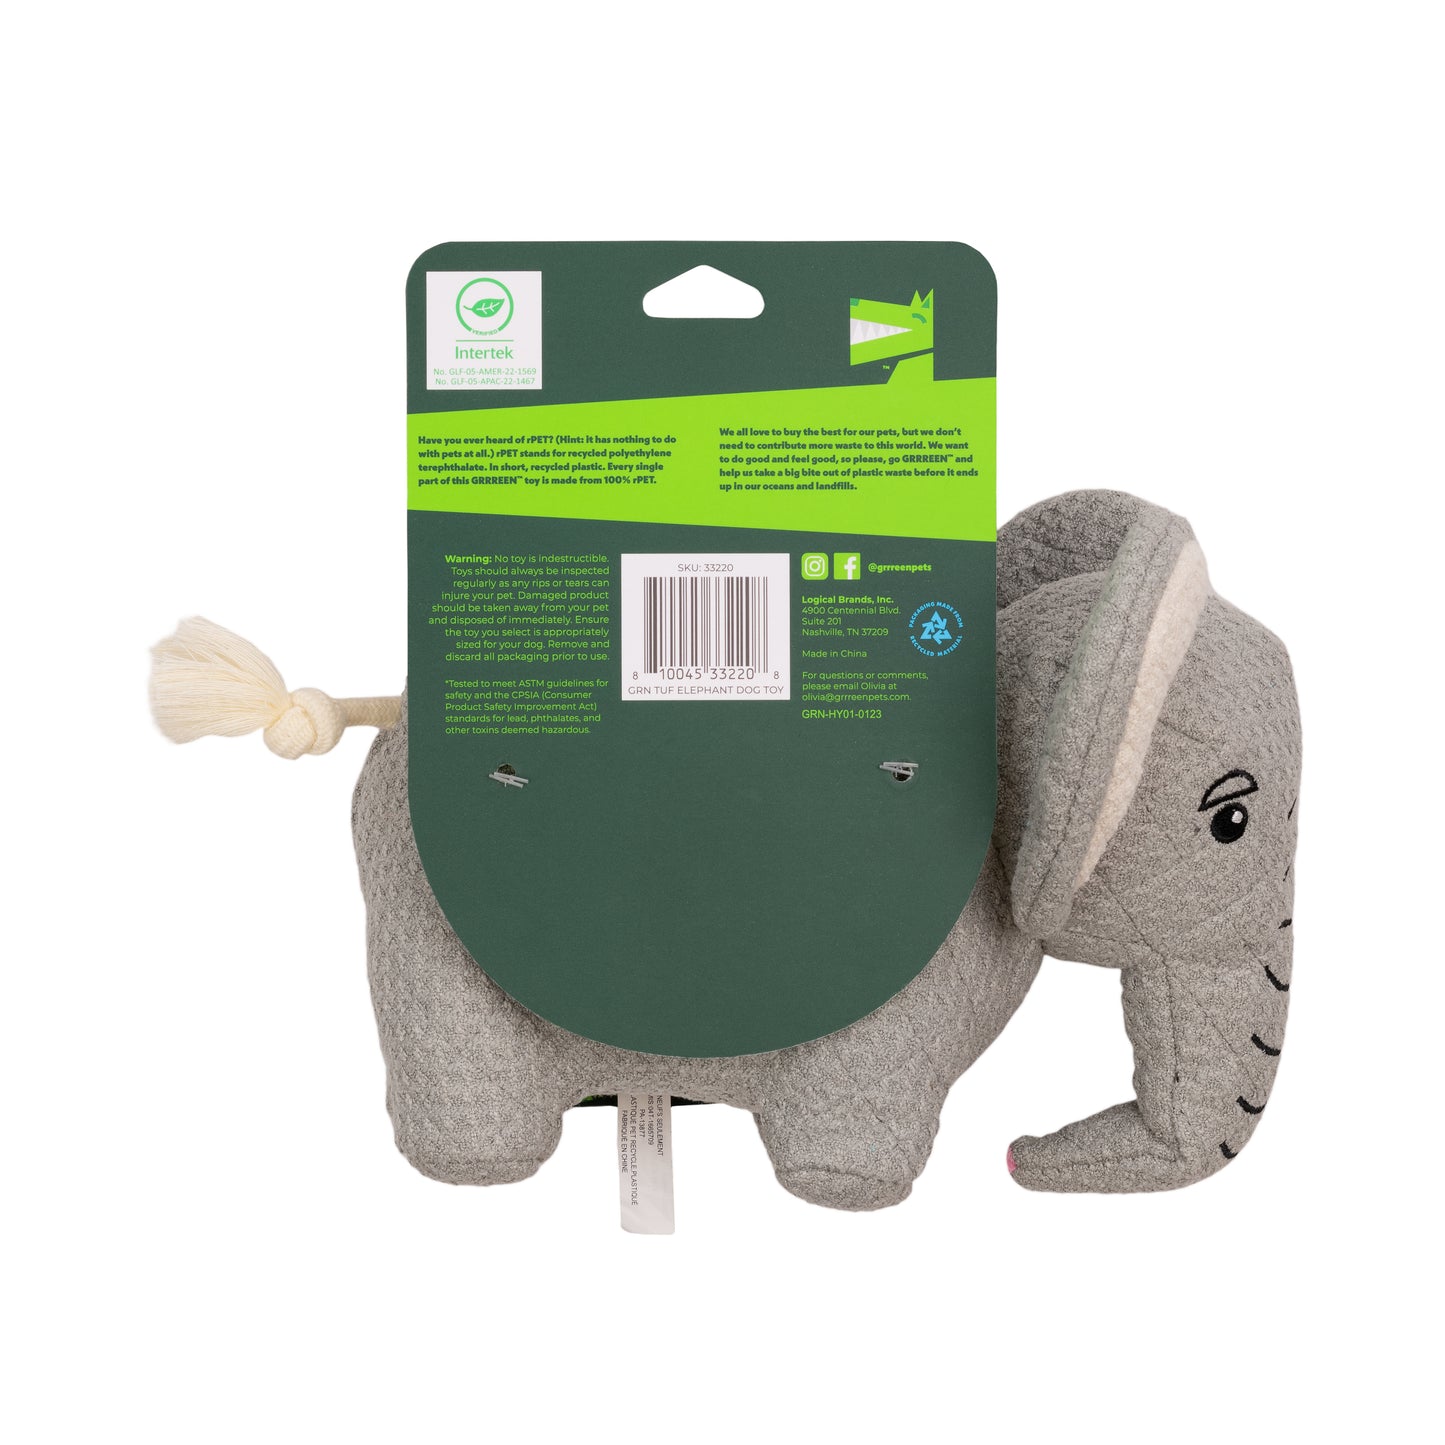 Elephant Dog Toy